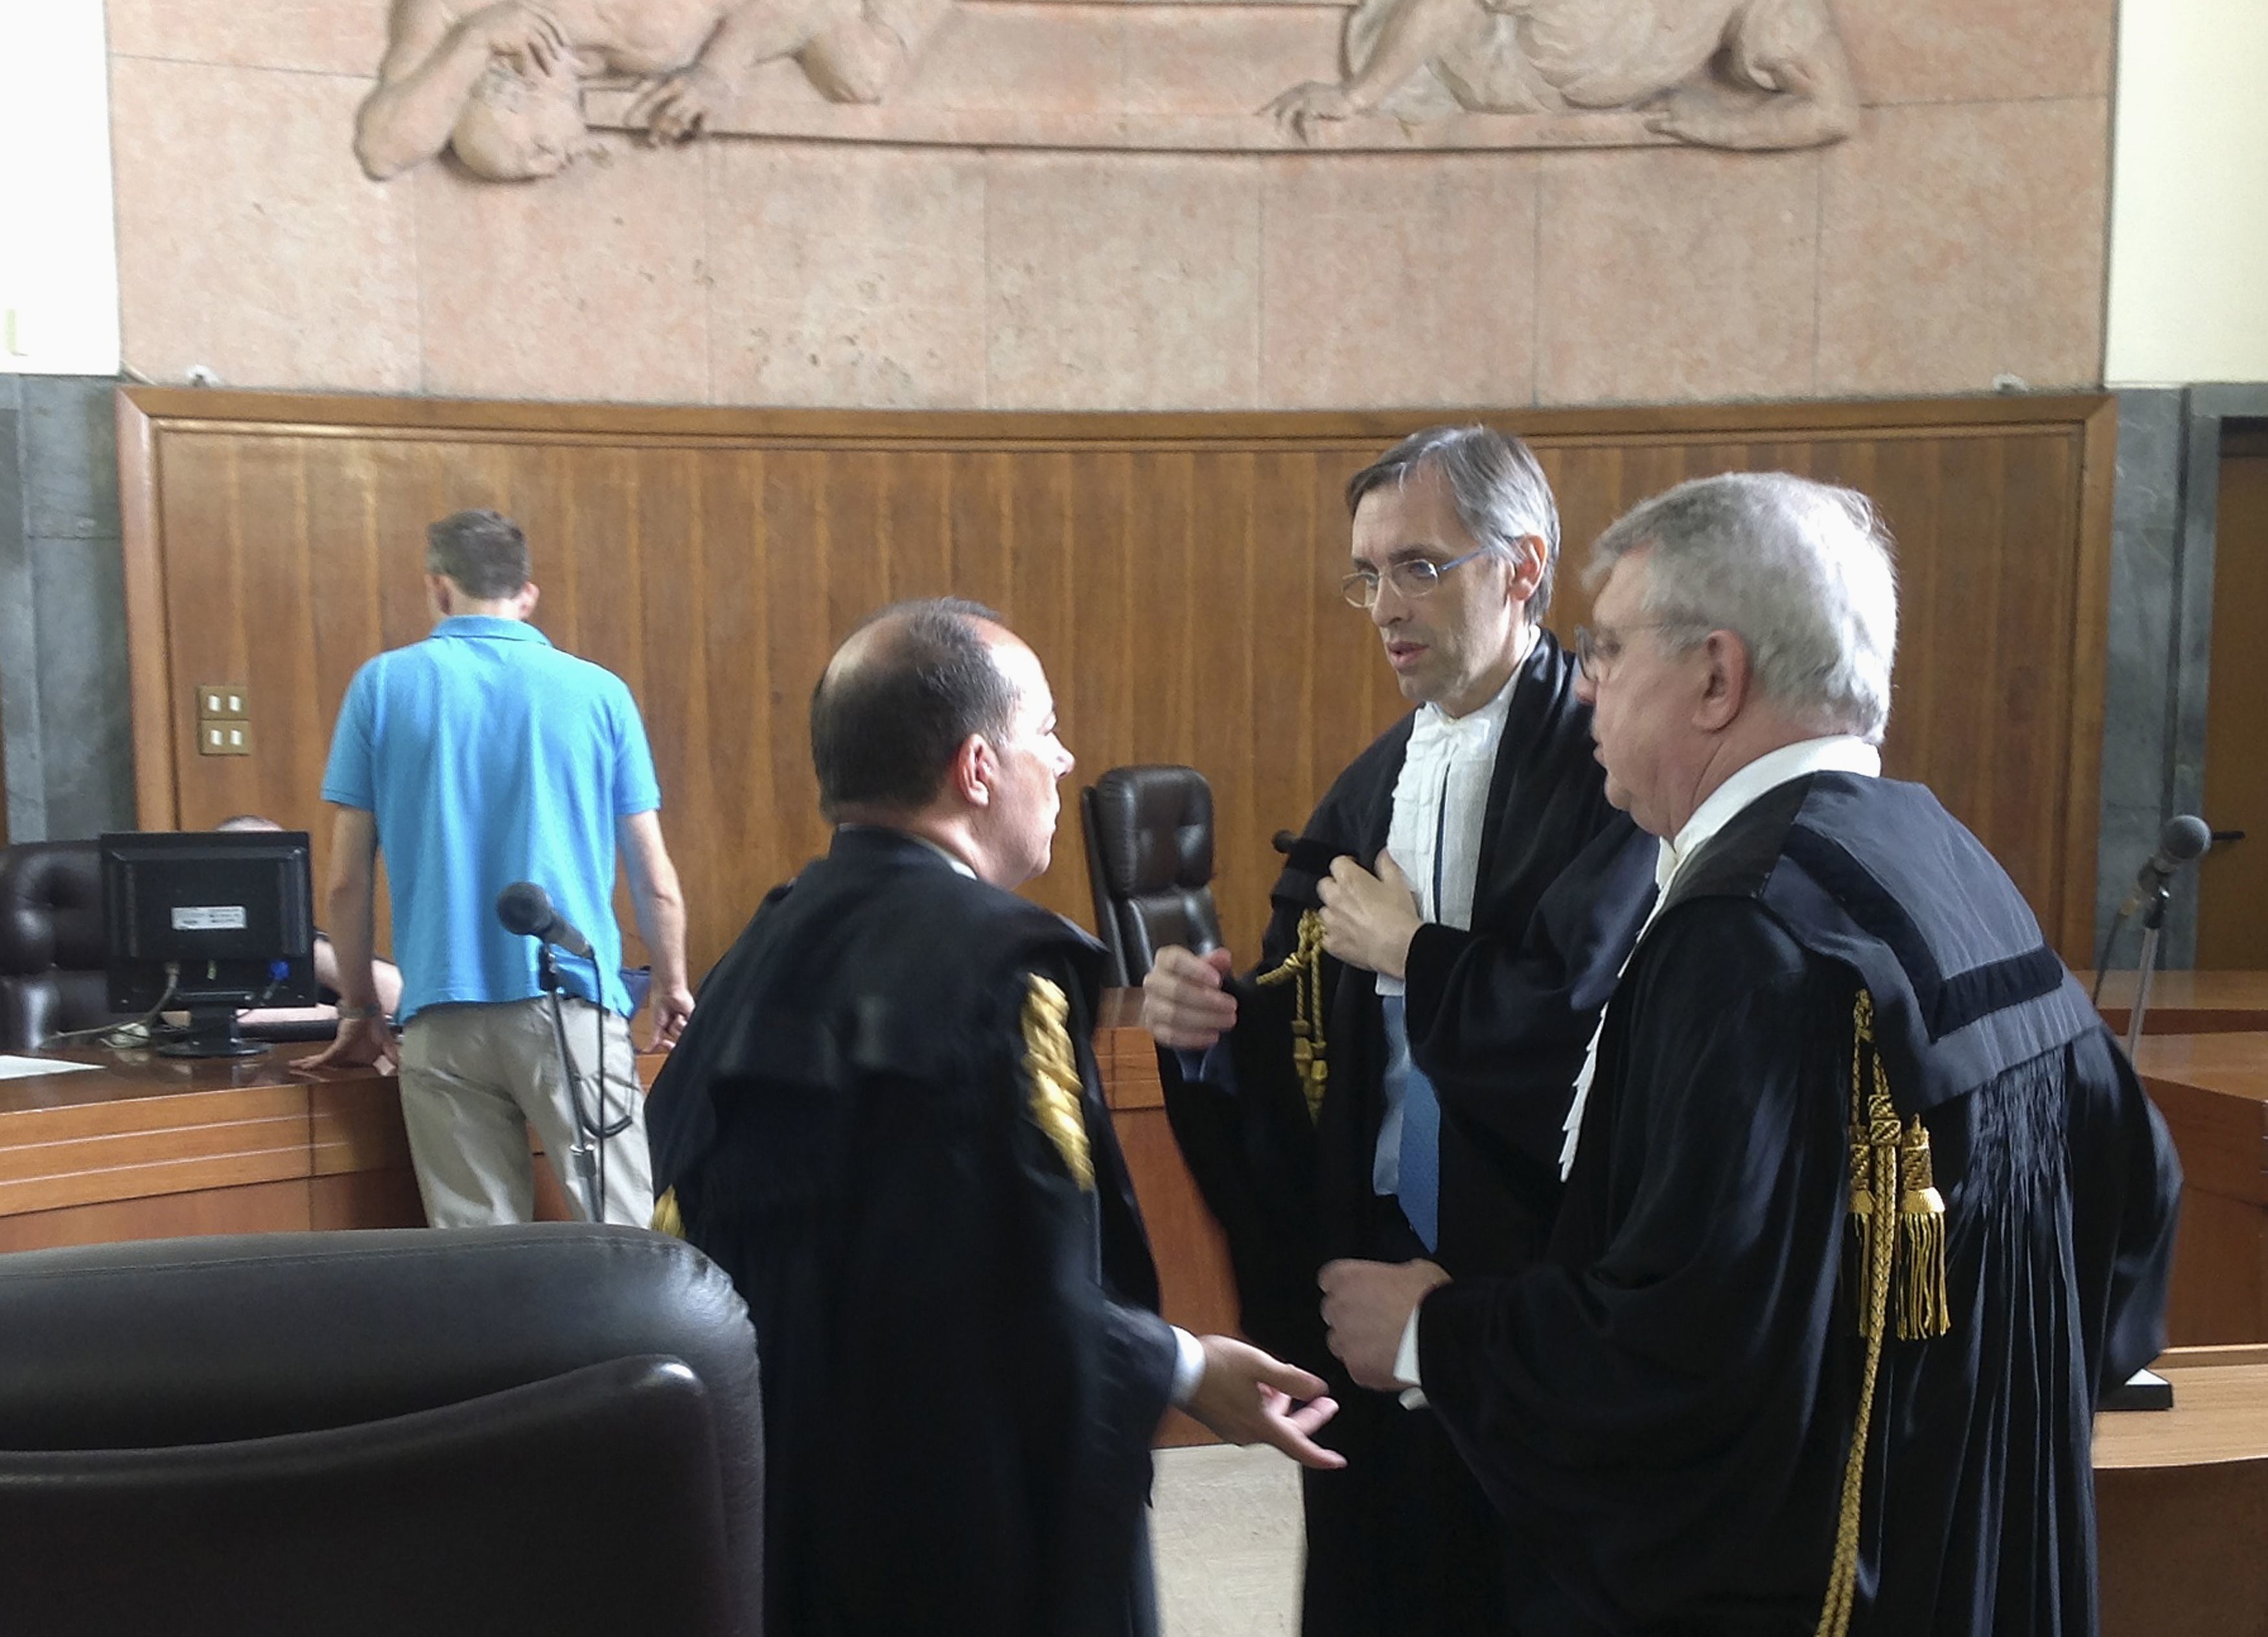 Έντονες αντιδράσεις μετά την αποπομπή Μπερλουσκόνι από τη Βουλή – “Είναι αδικία”, λέει ο εκπρόσωπός του